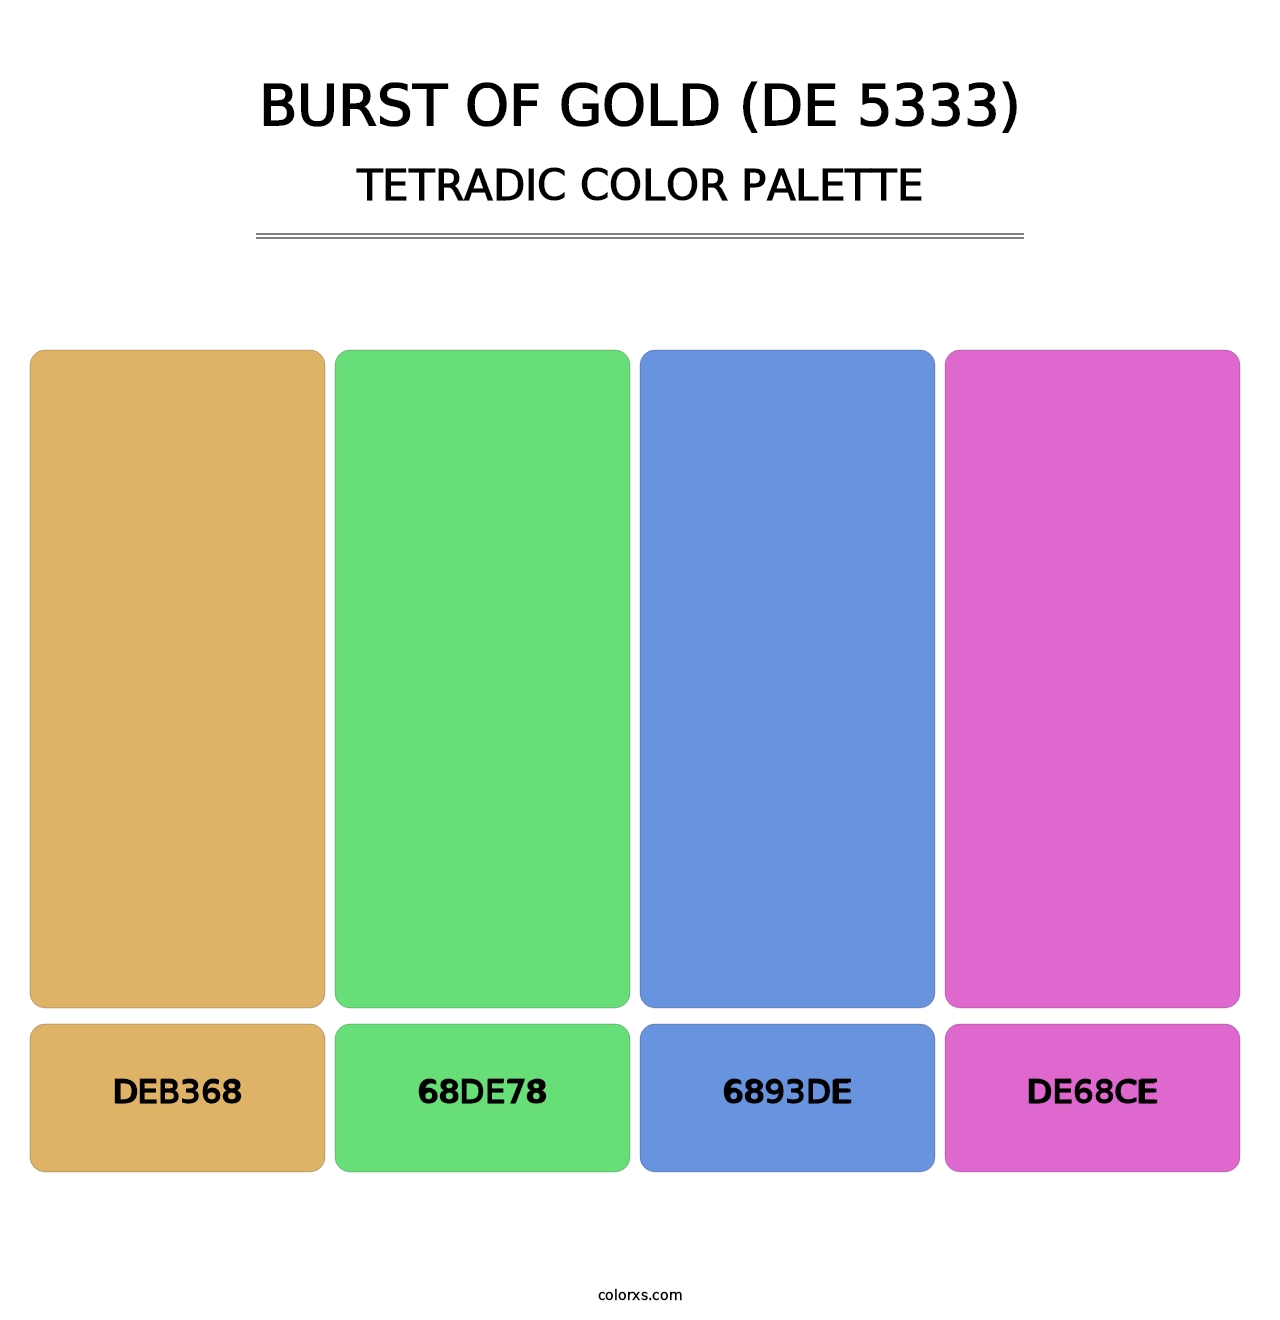 Burst of Gold (DE 5333) - Tetradic Color Palette